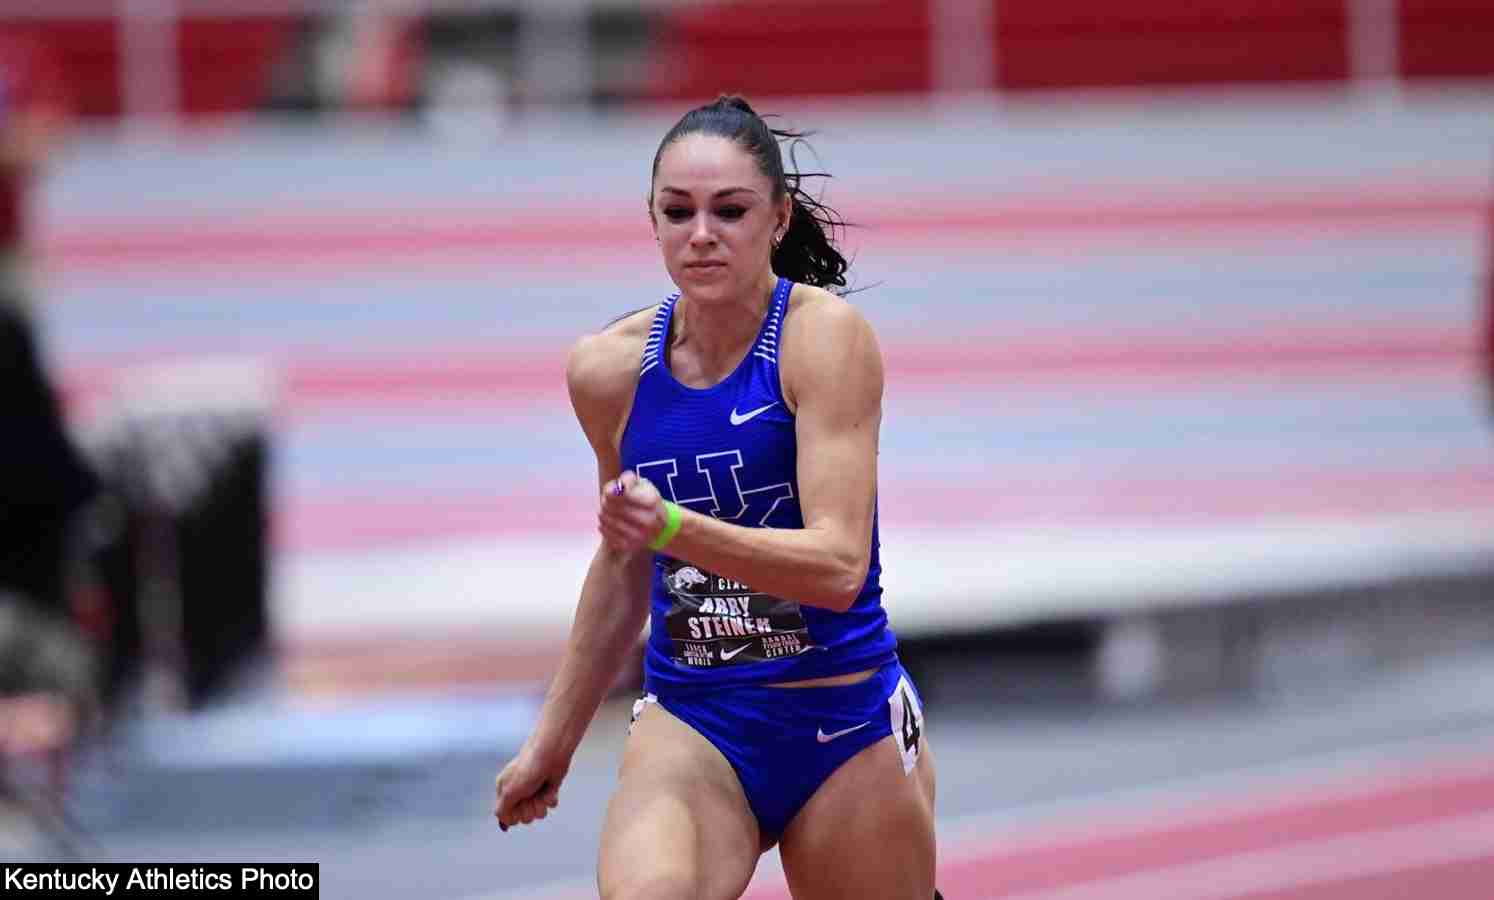 Watch Abby Steiner breaks Merlene Ottey 300m indoor collegiate record with 35.80